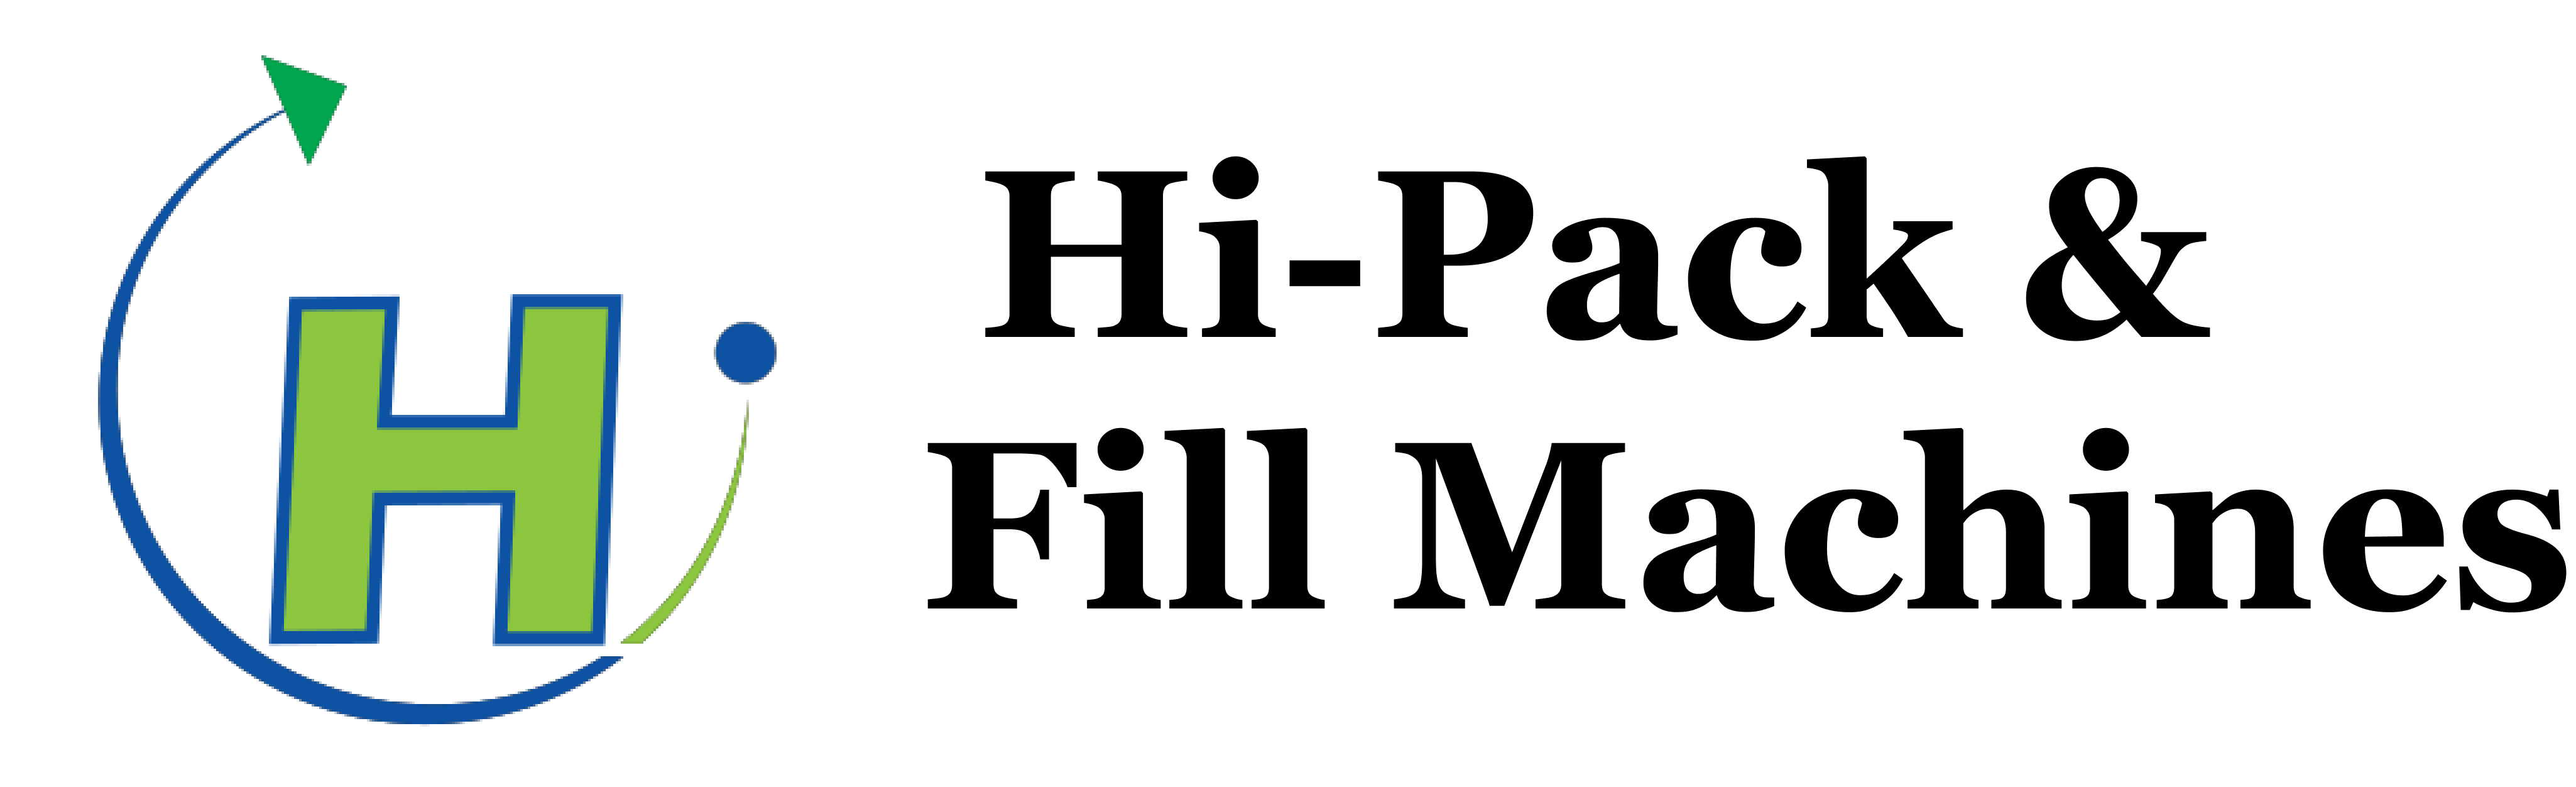 HI-PACK & FILL MACHINE